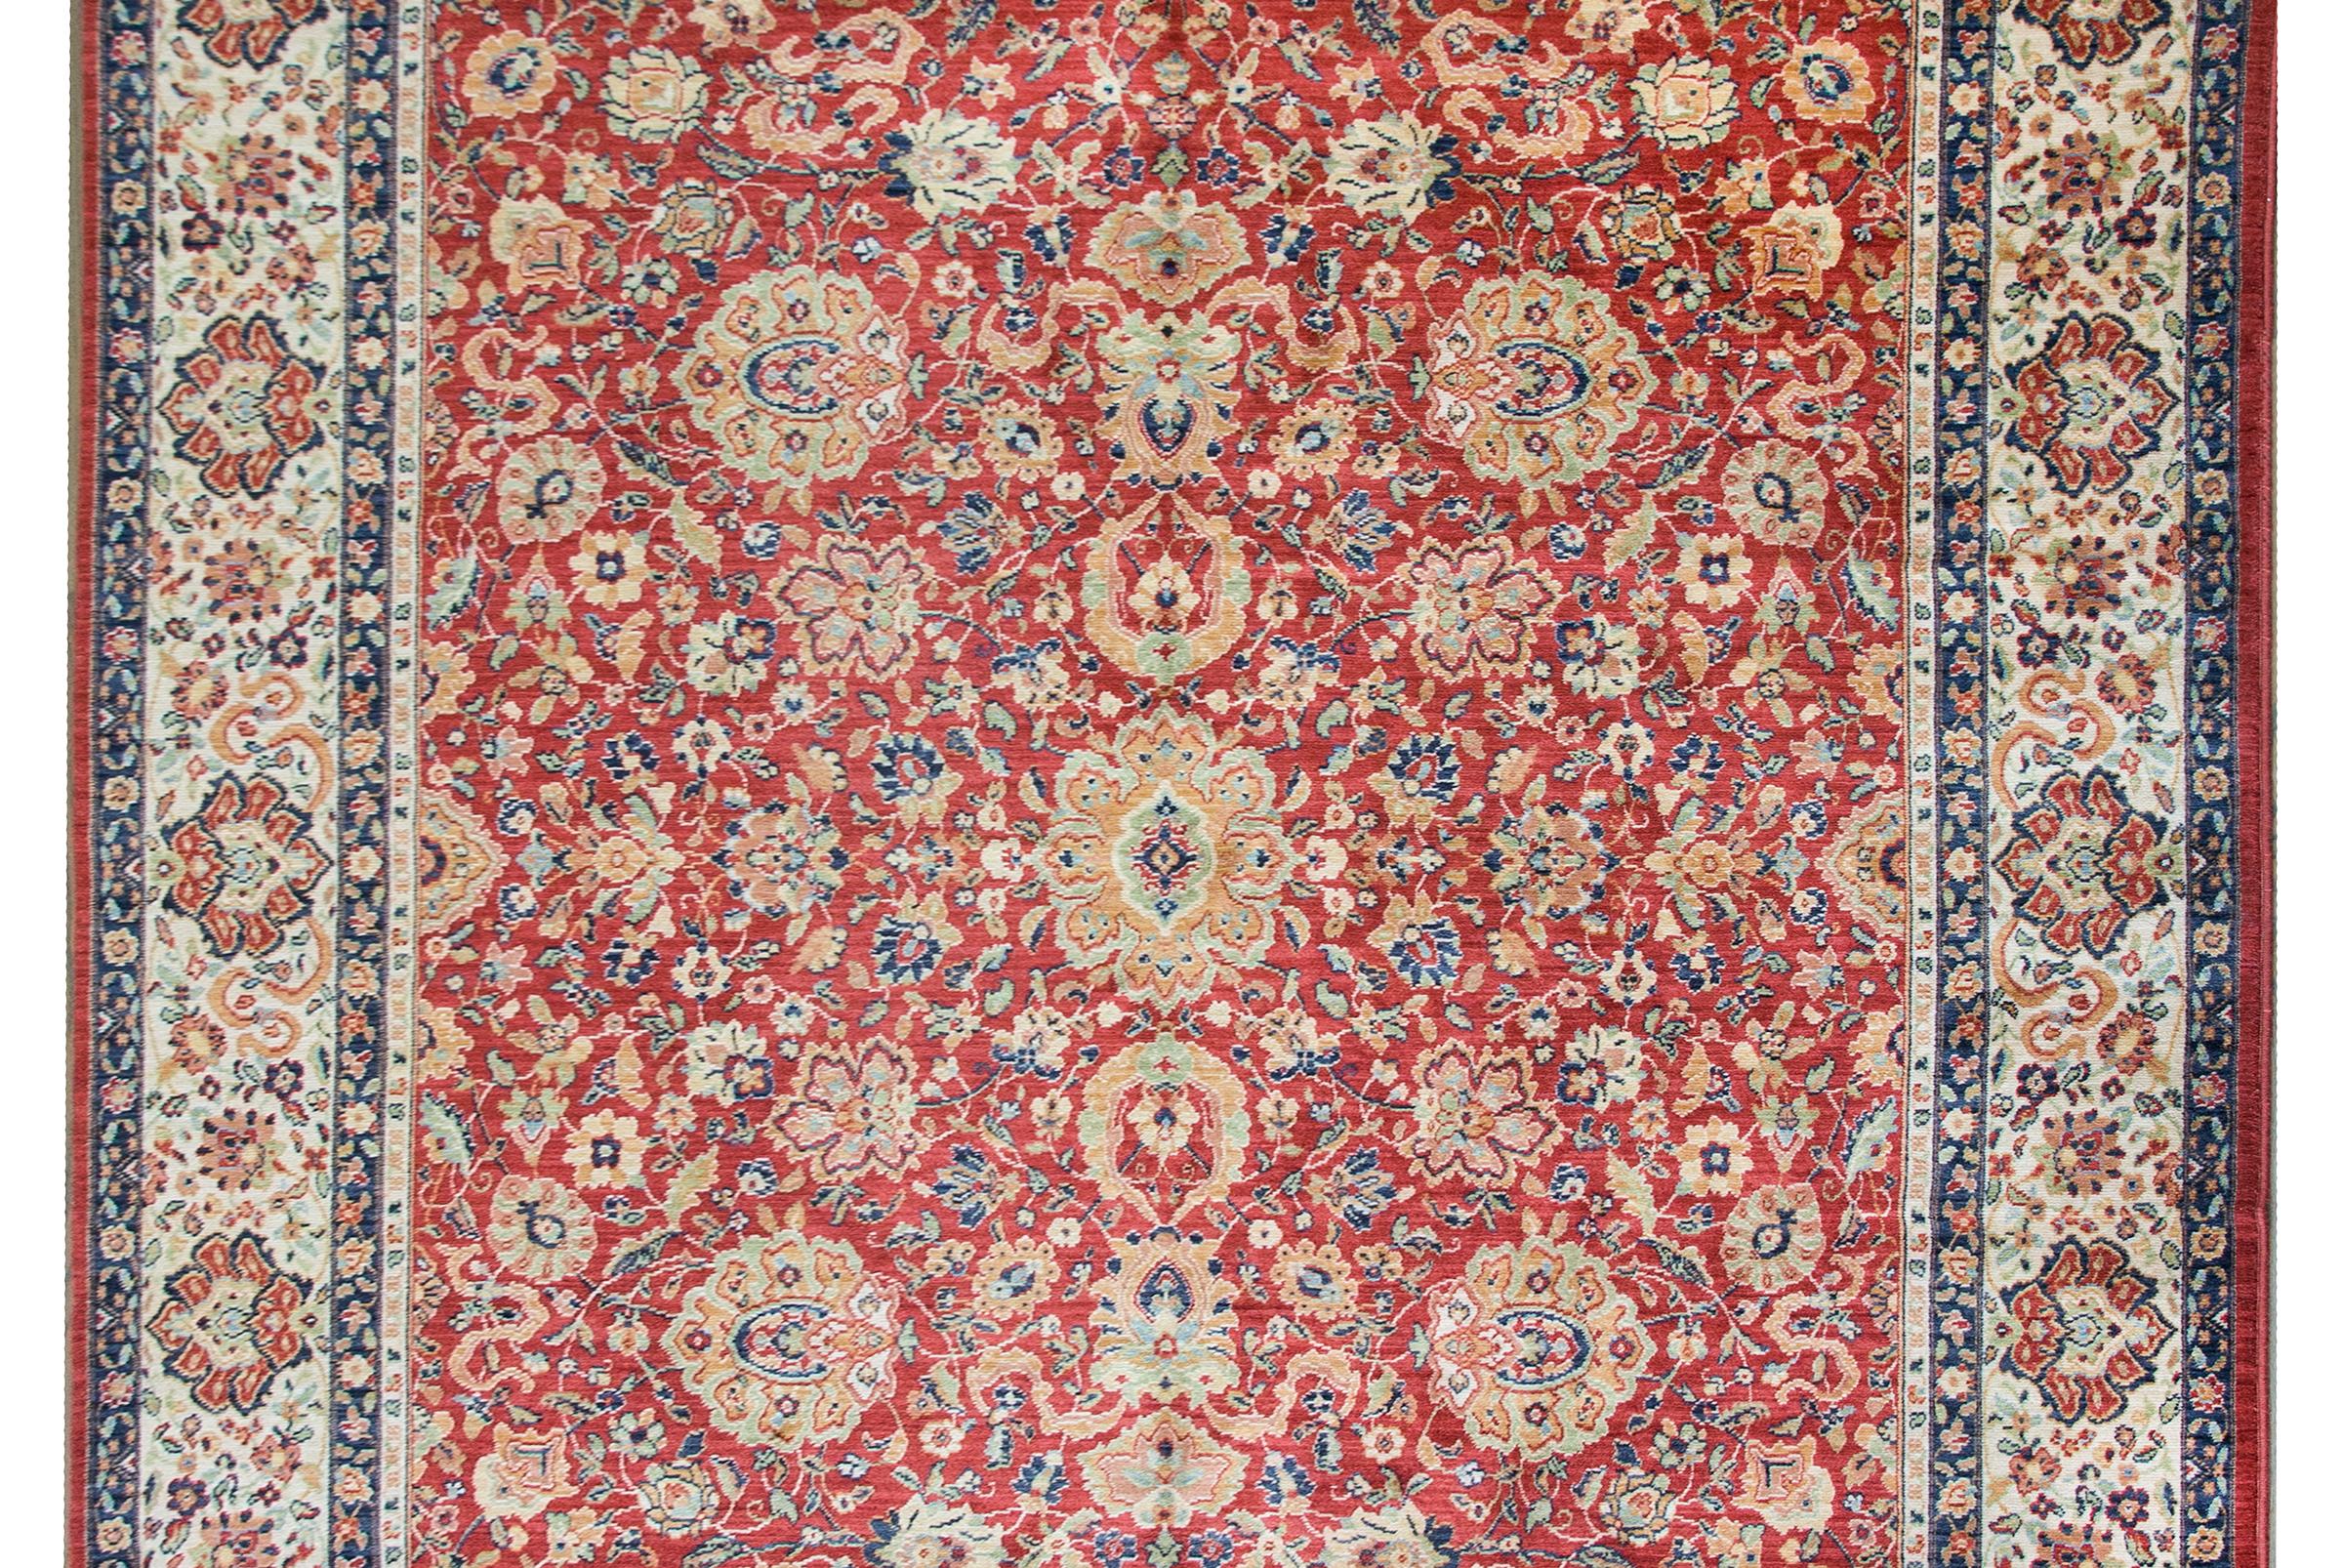 Ein schöner Karastan-Teppich aus dem späten 20. Jahrhundert, handgeknüpft mit einem Mahal-Muster, das ein großes, gespiegeltes, stilisiertes Blumen- und Rankenmuster enthält, umgeben von einer breiten Bordüre mit einem sich wiederholenden